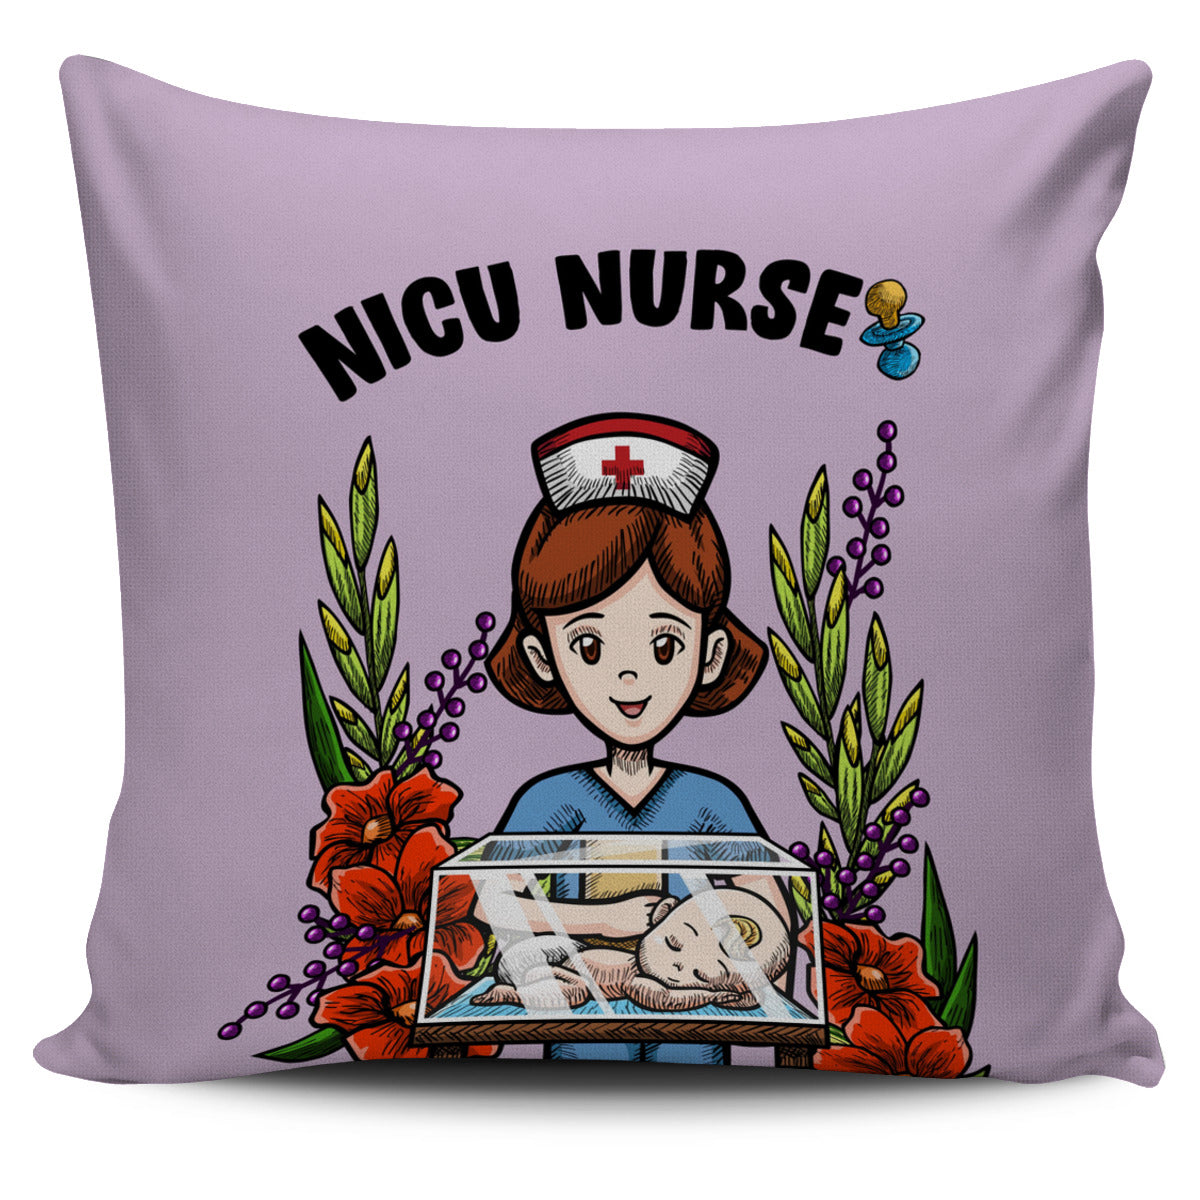 NICU Nurse Pillow Cover